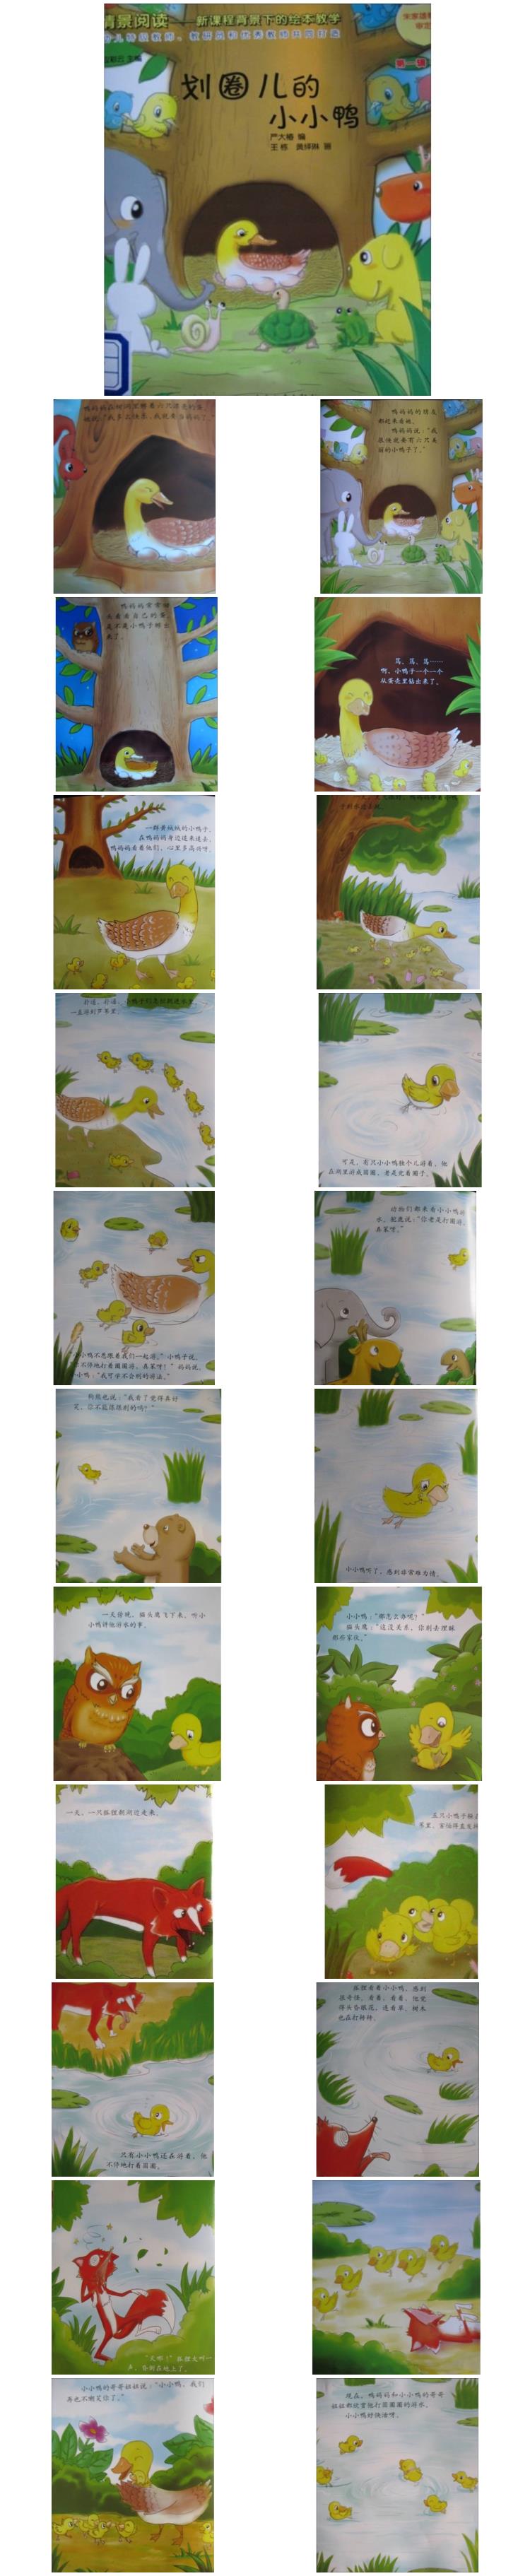 《划圈儿的小小鸭》童话绘本儿童故事PPT